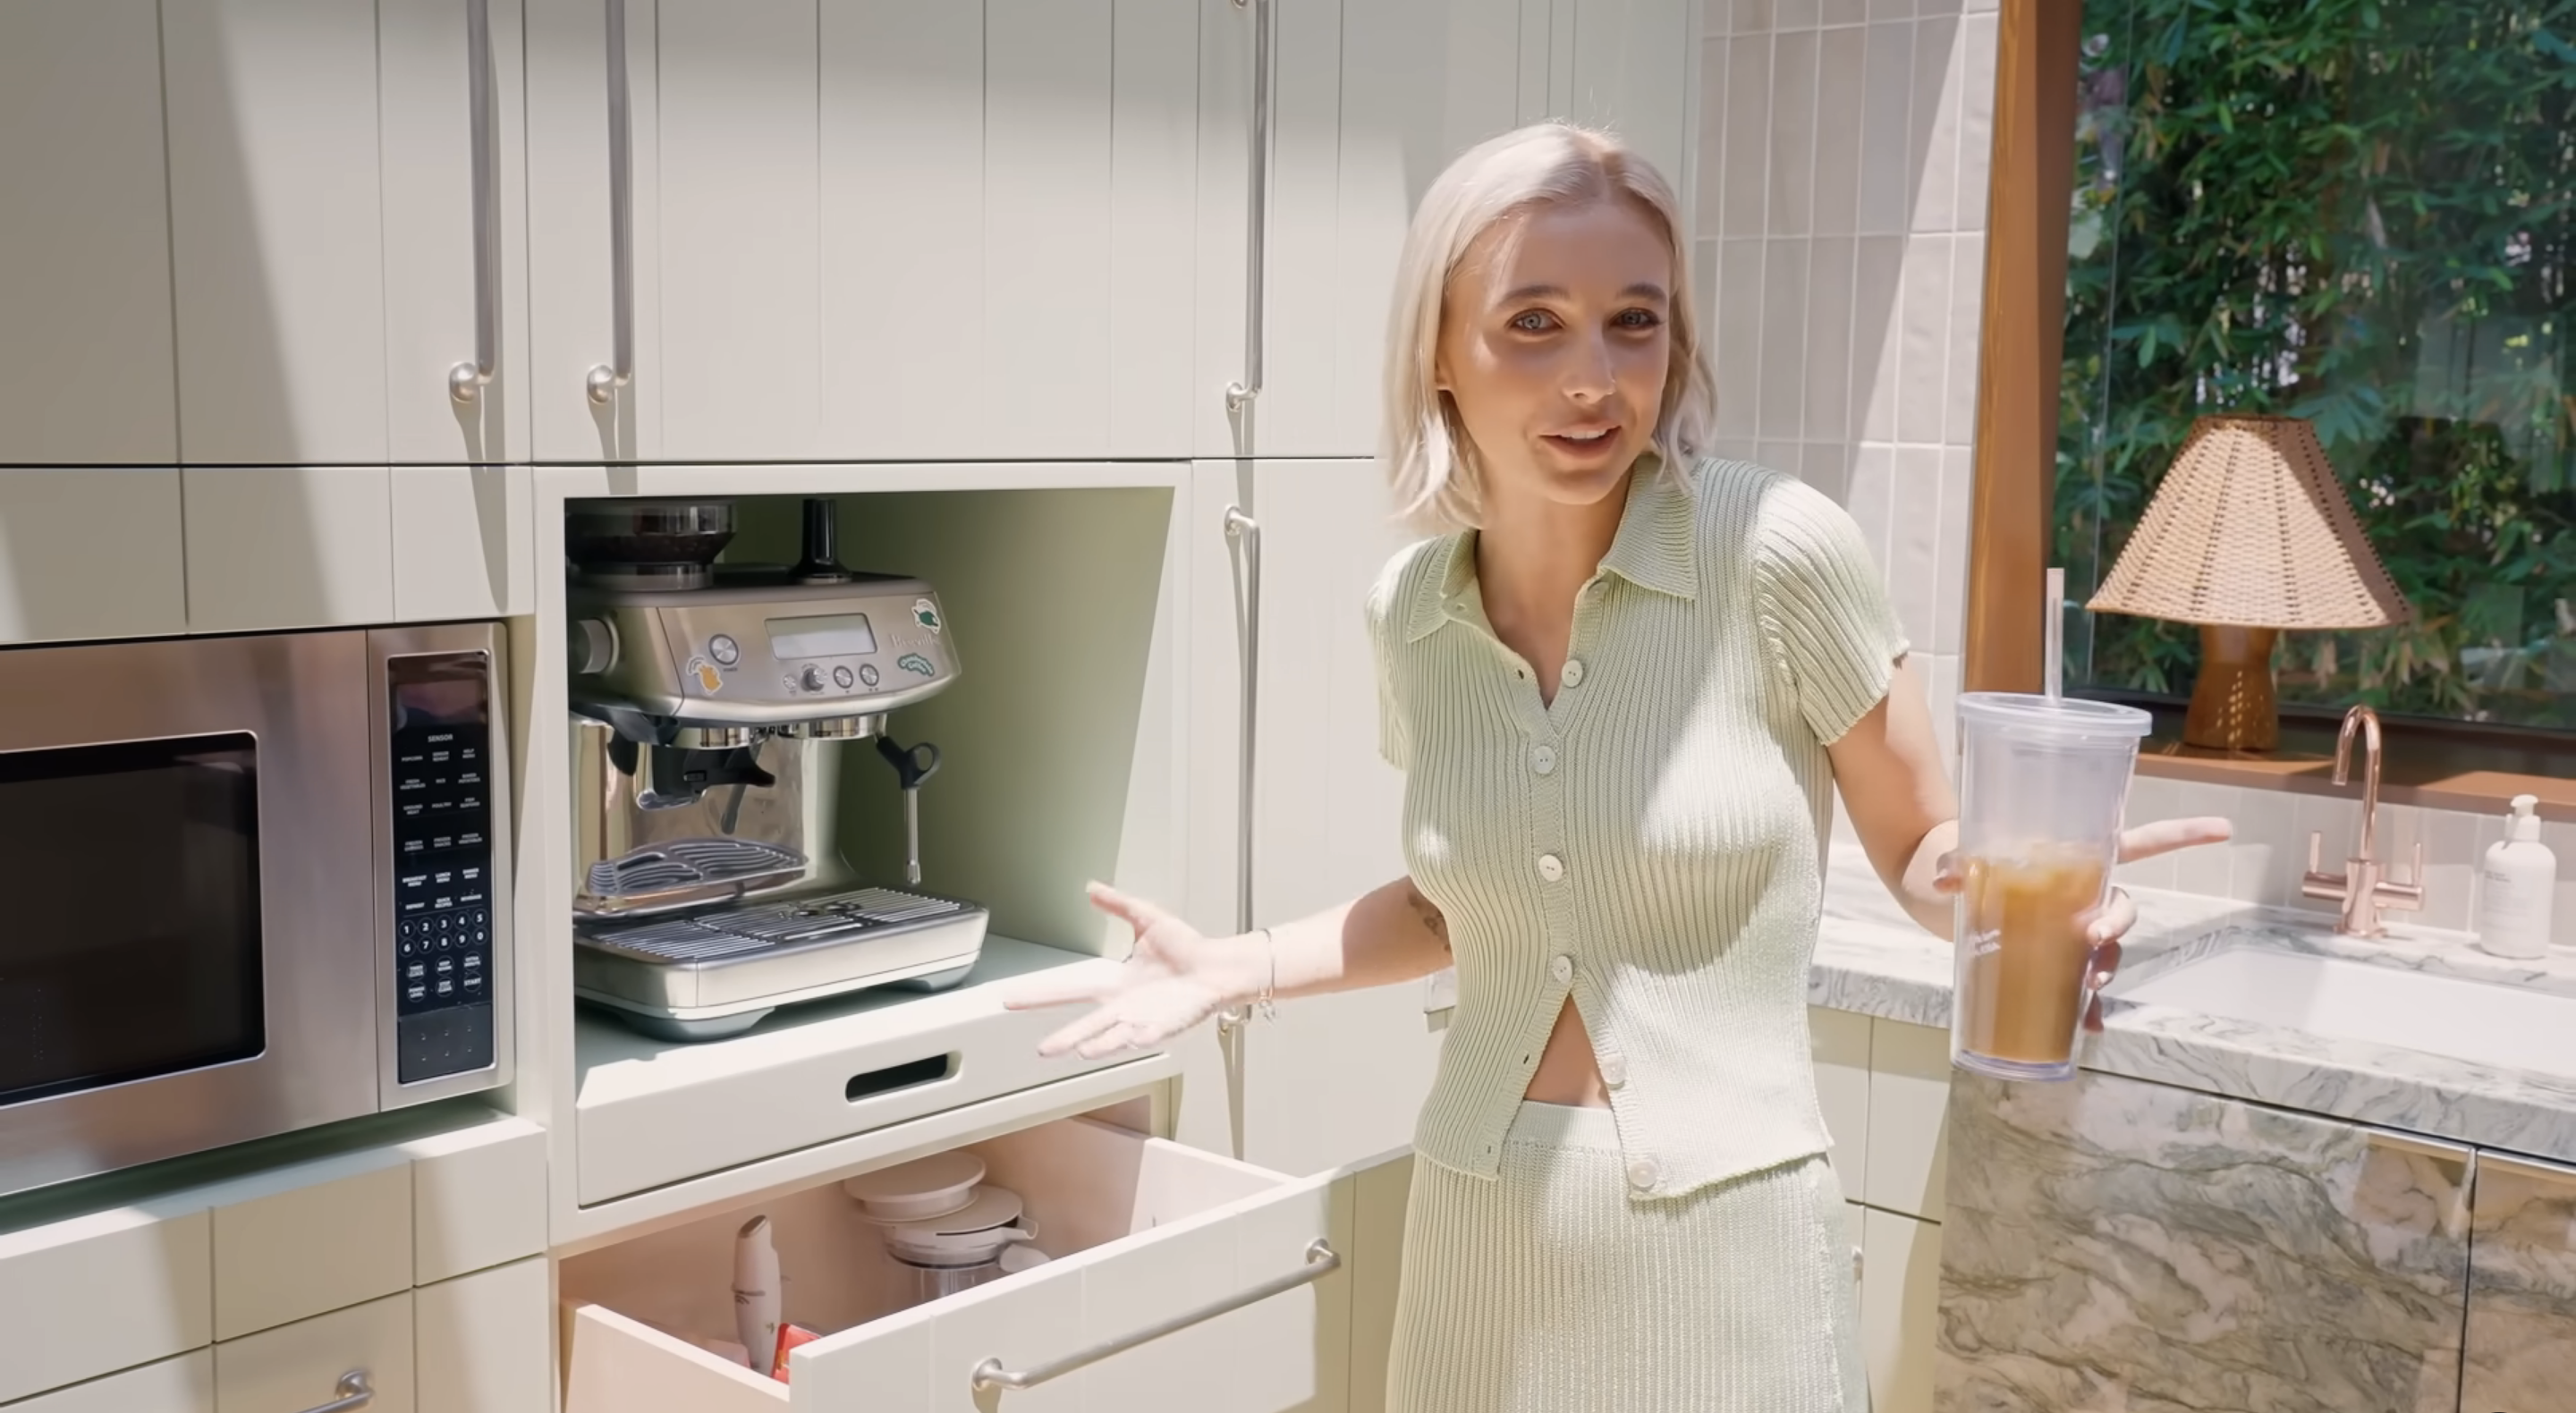 Emma in her kitchen